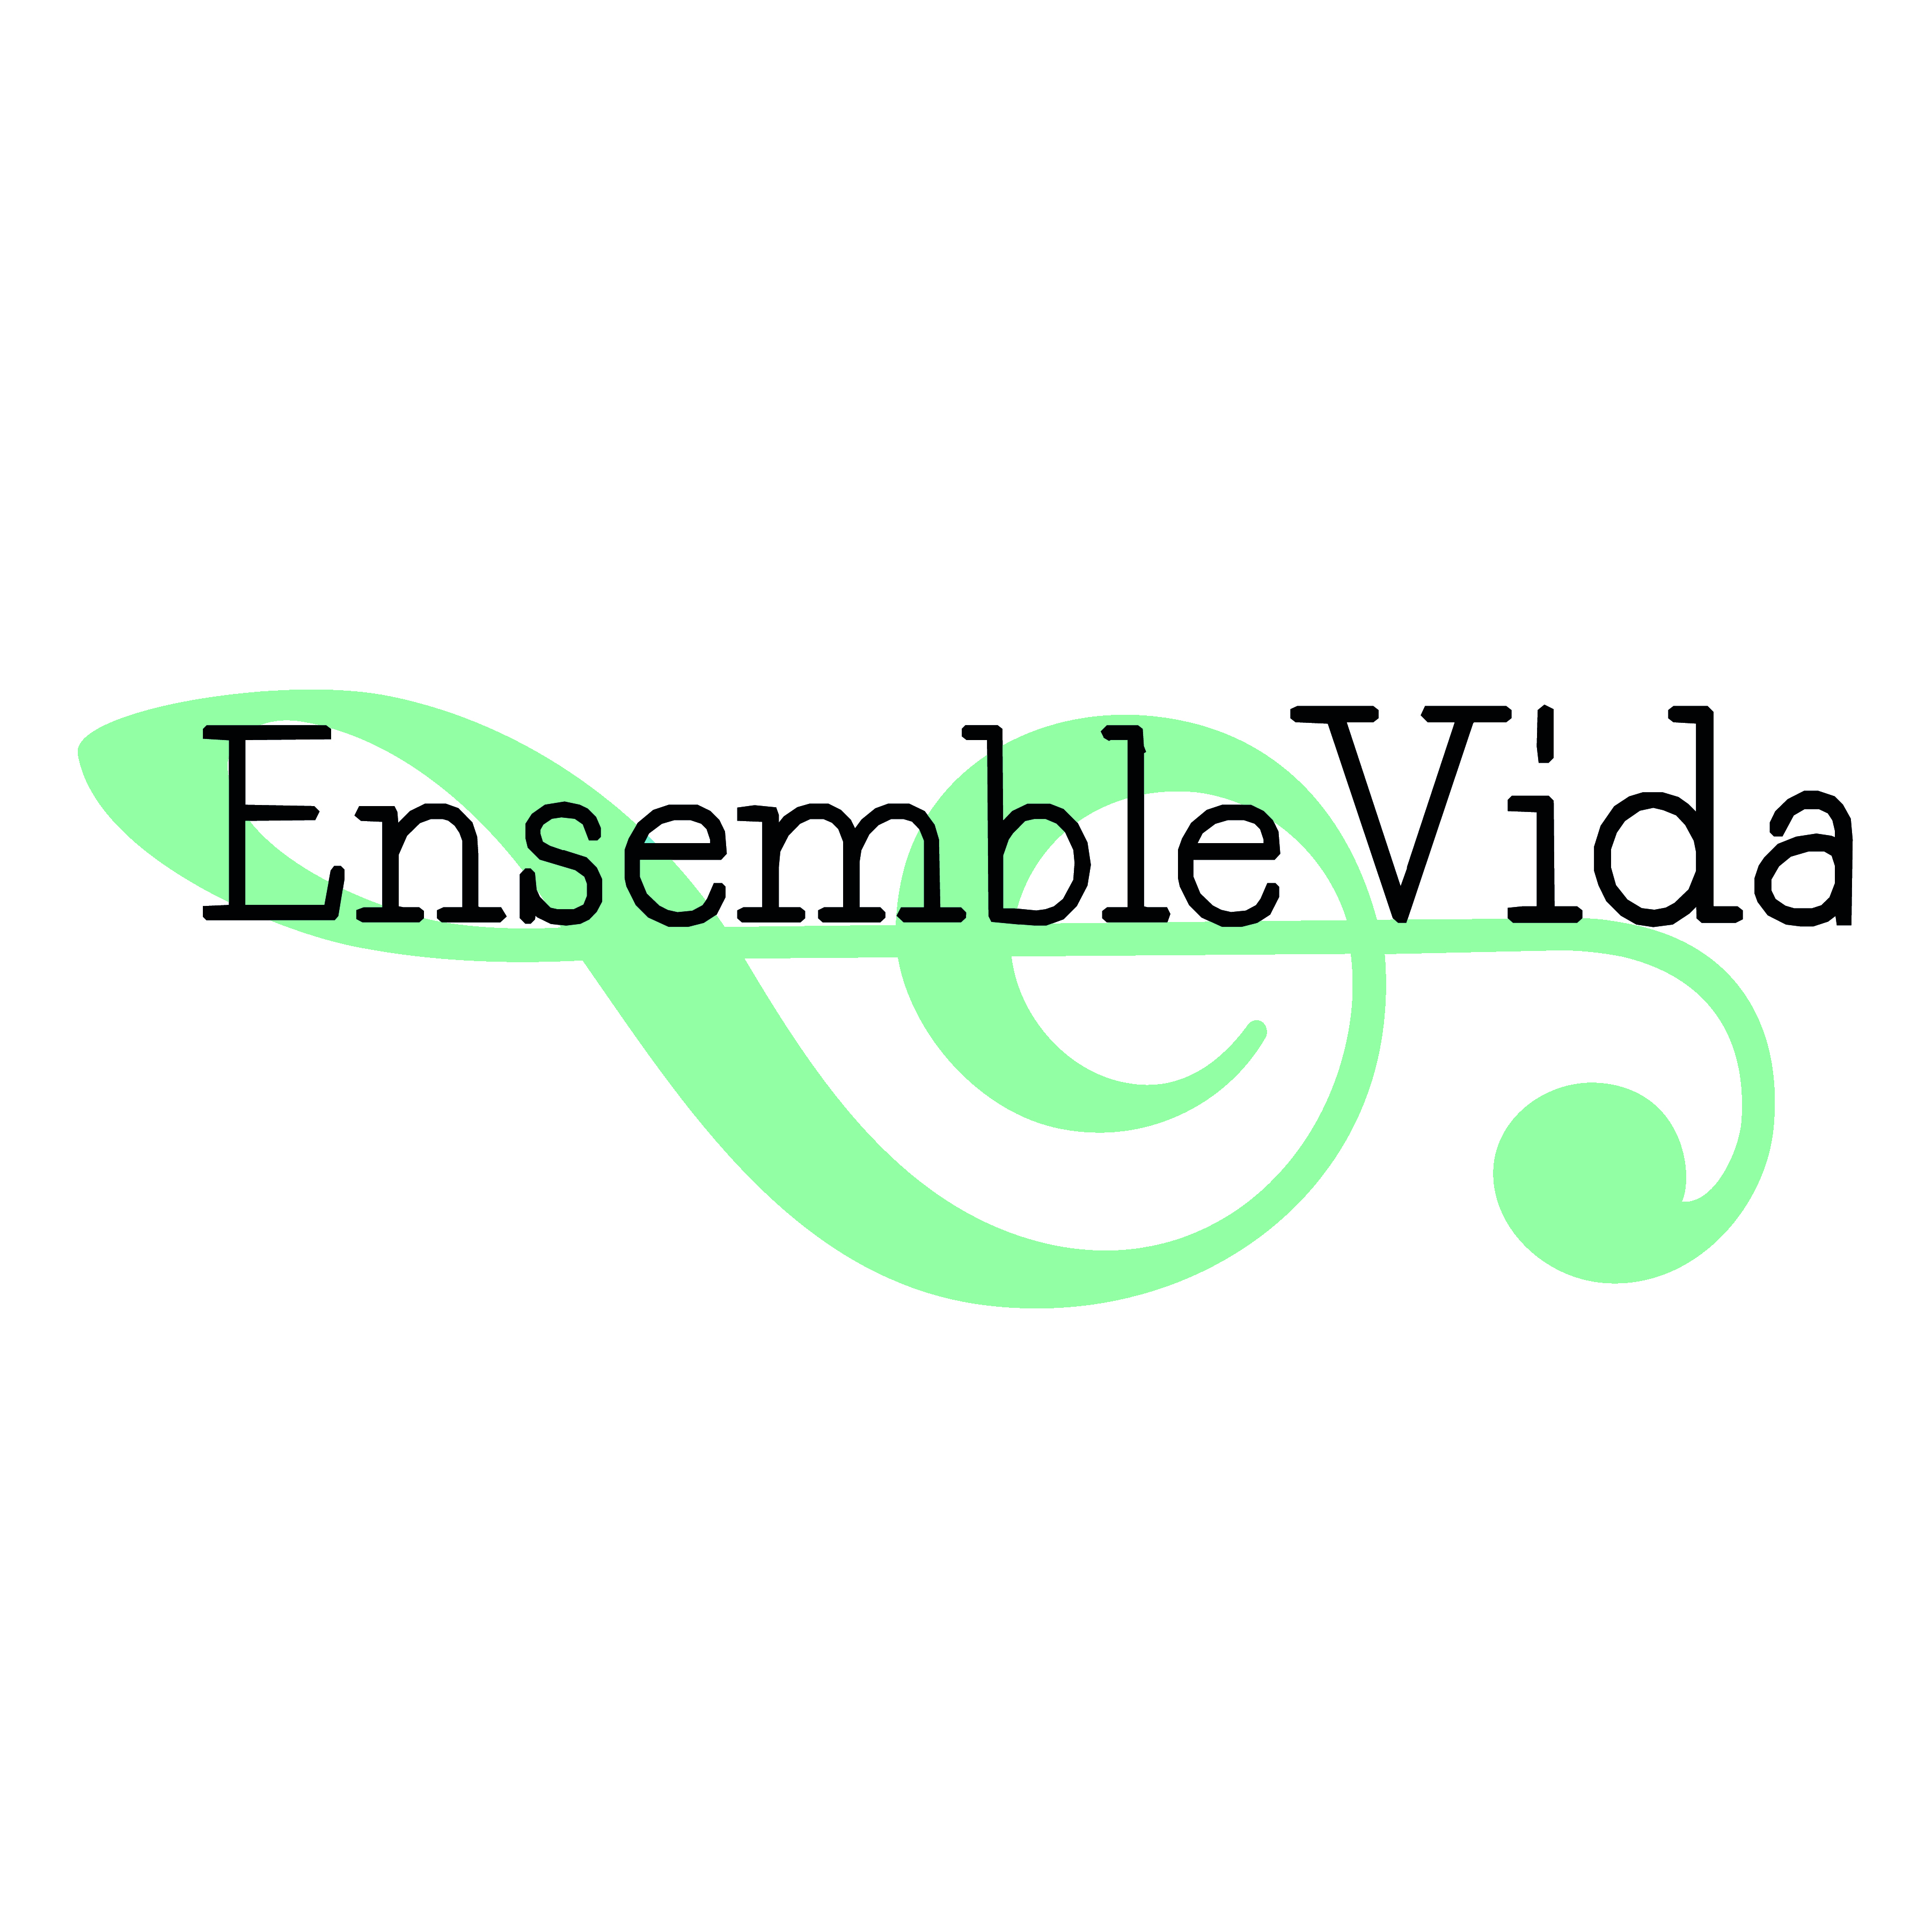   Ensemble Vida logo våren 2015